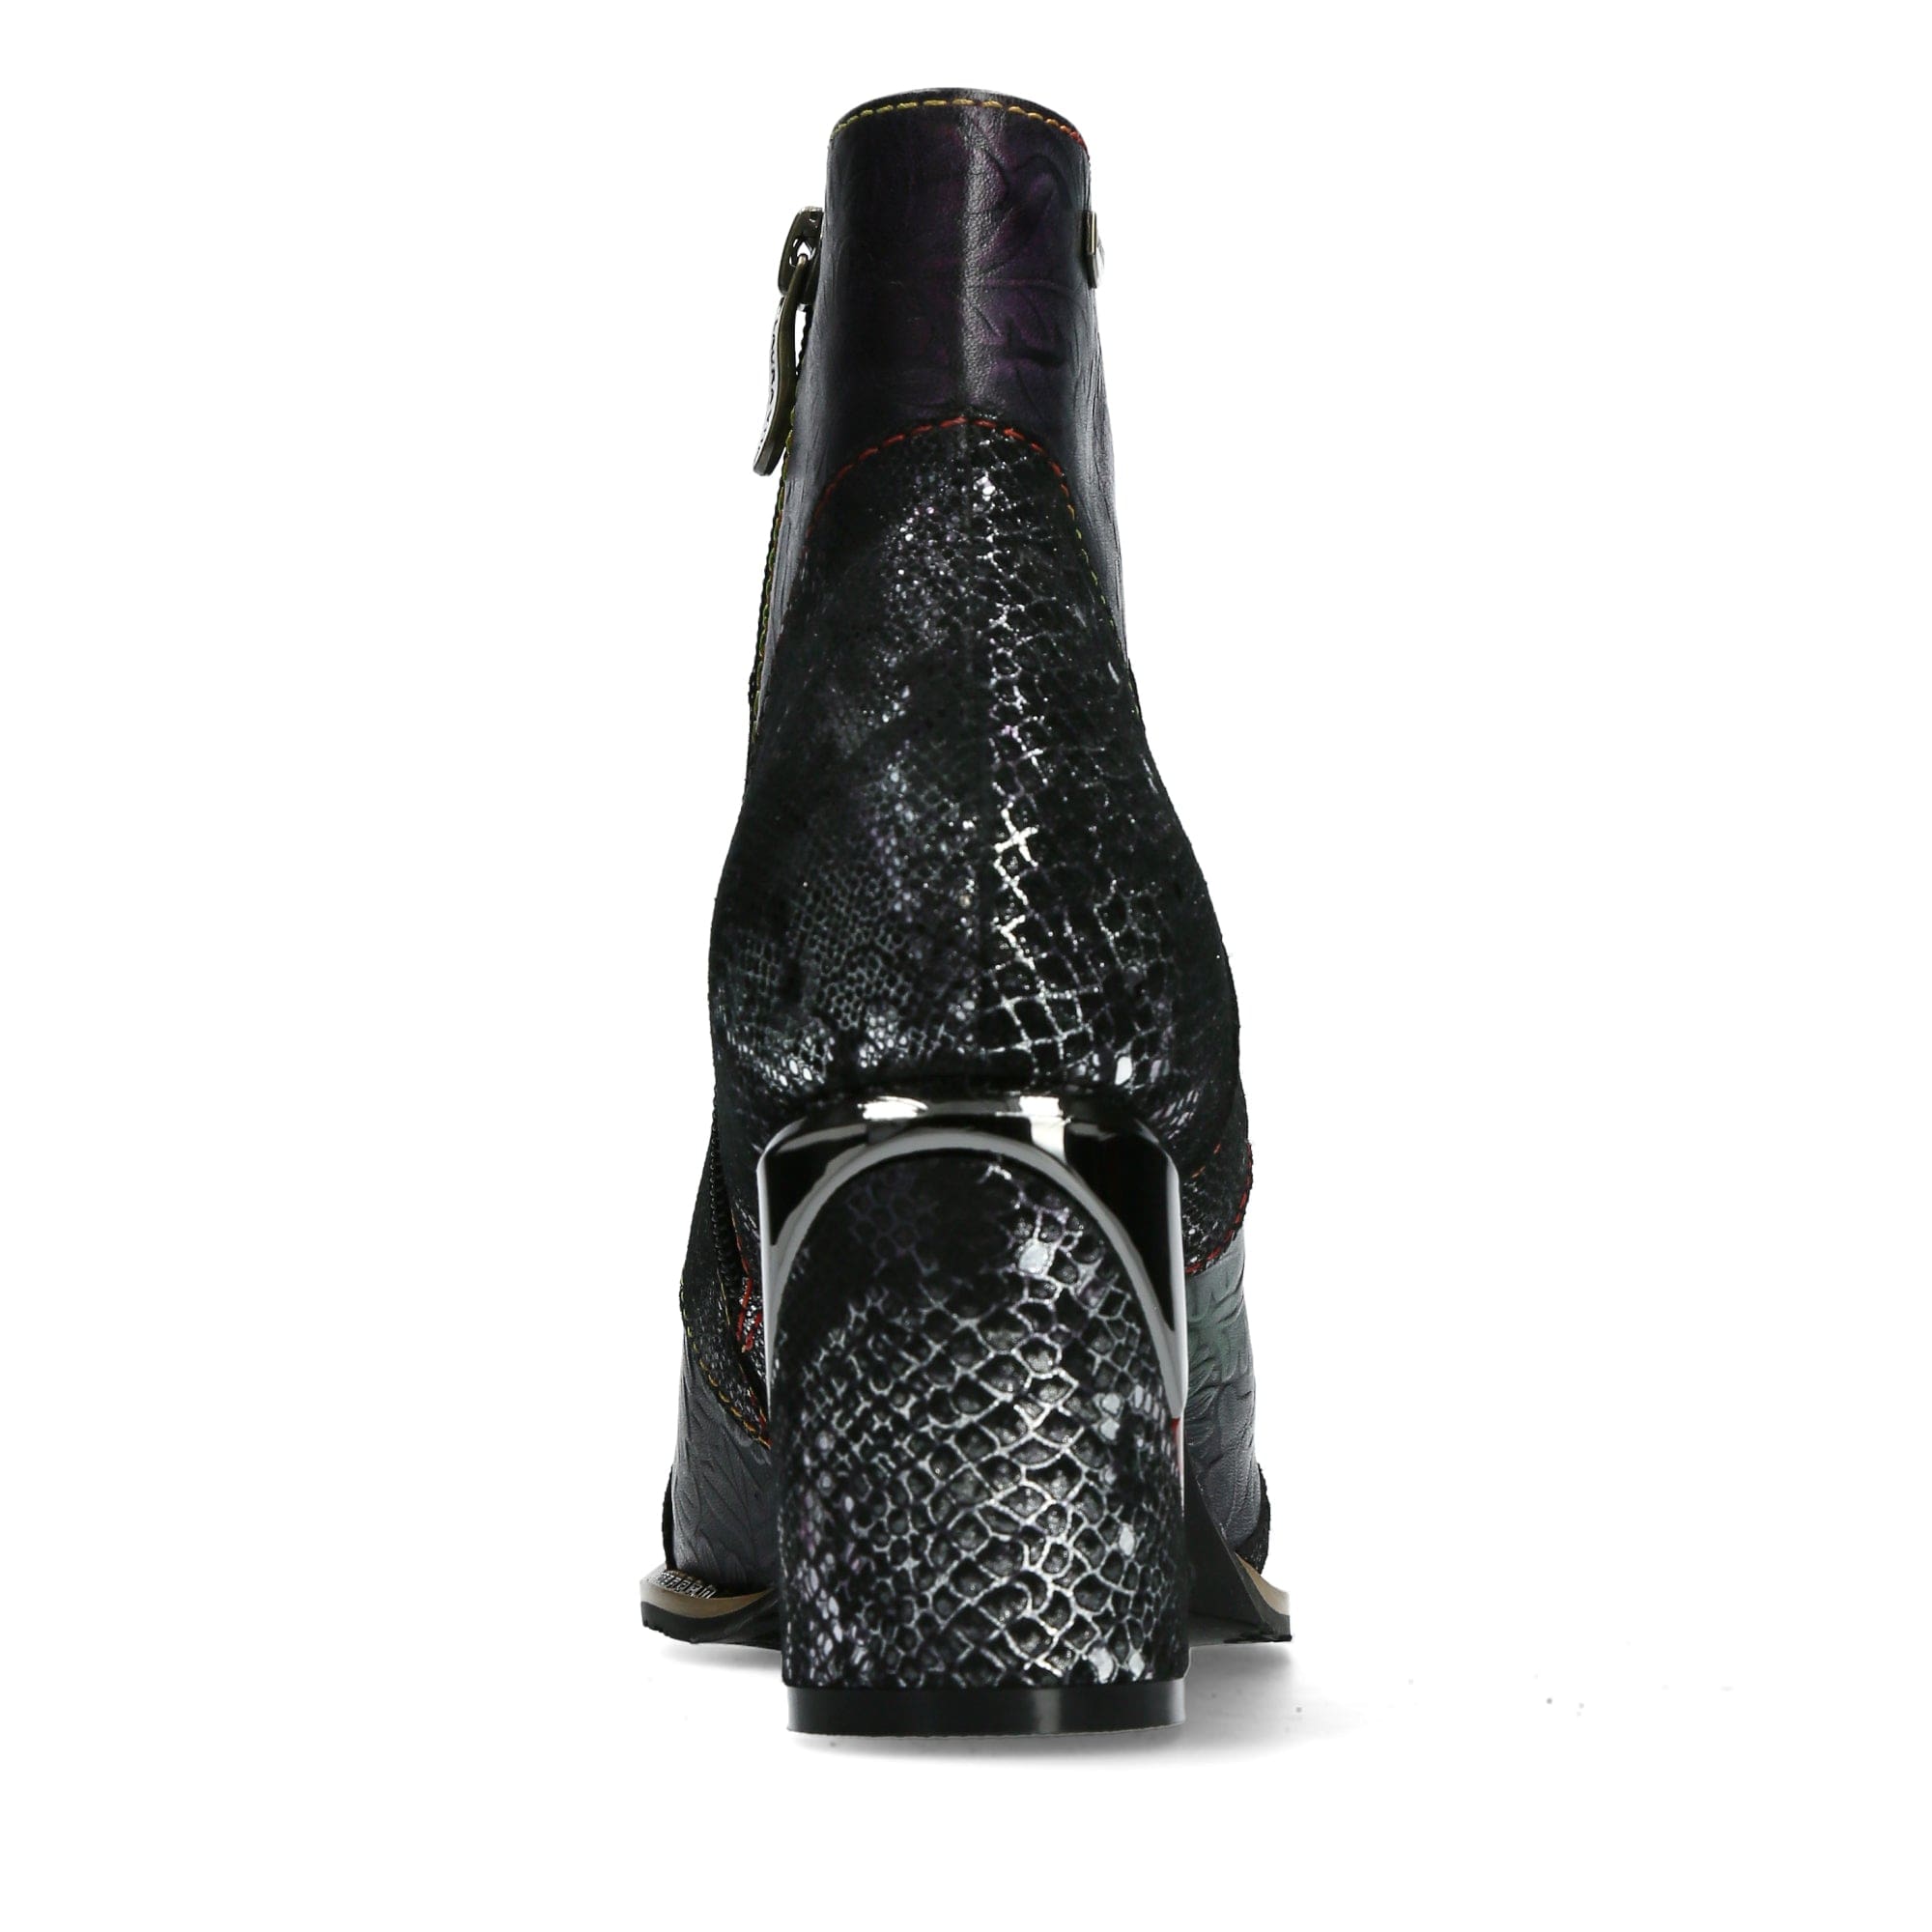 Shoe MAEVAO 0123 - Boots